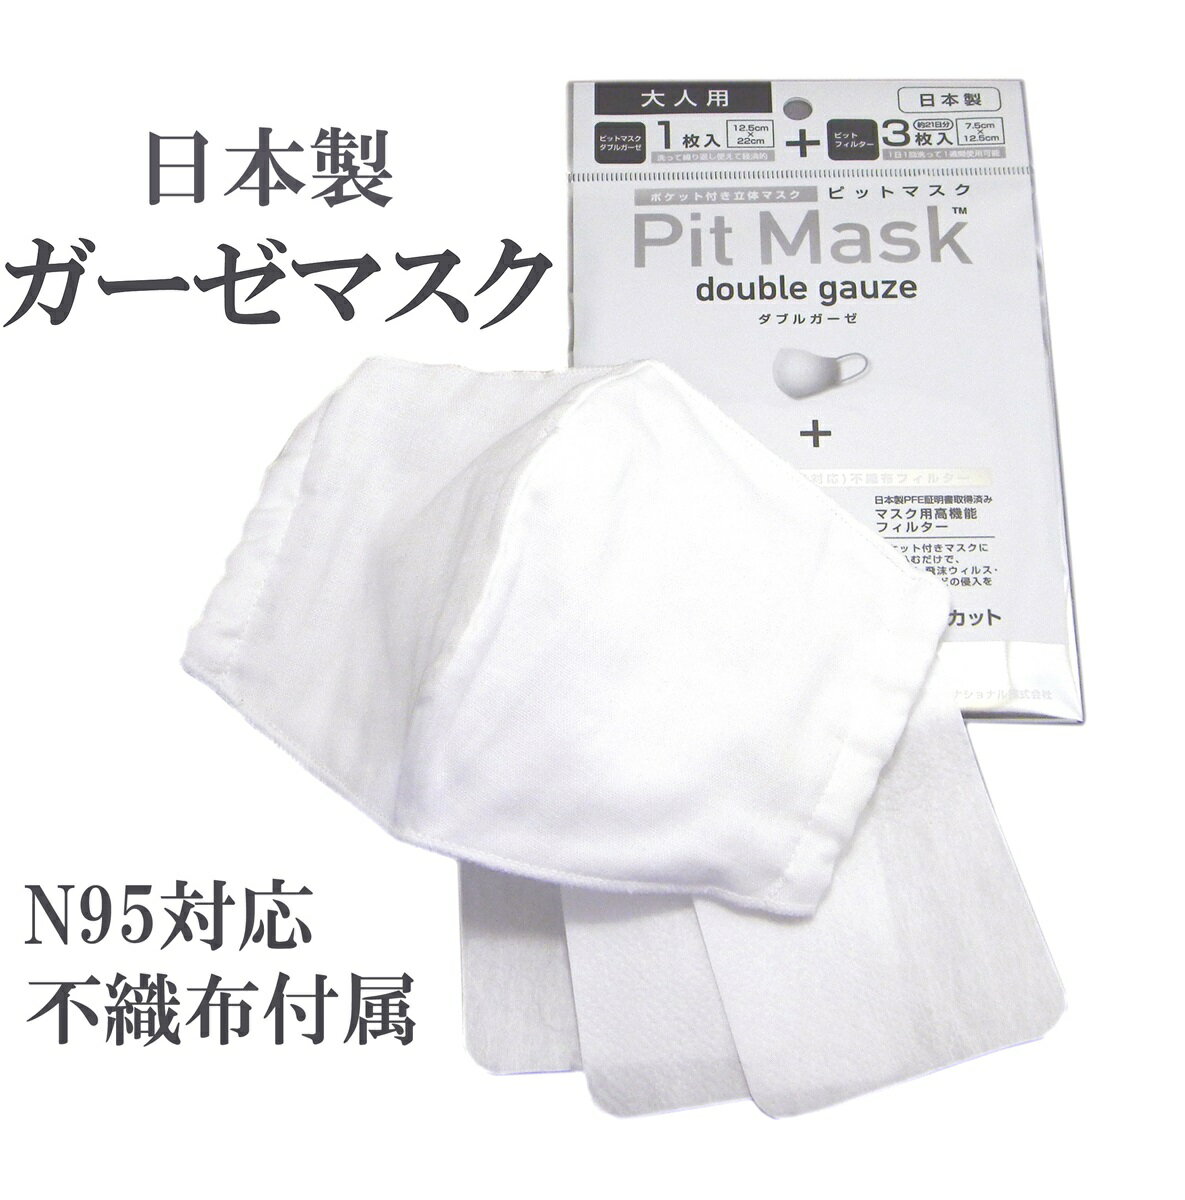 マスク用 フィルターシート/N95対応不織布3枚+ガーゼマスク 日本製 花粉 ウィルス対策 国産 ピットフィルターpitfilter ピットマスク